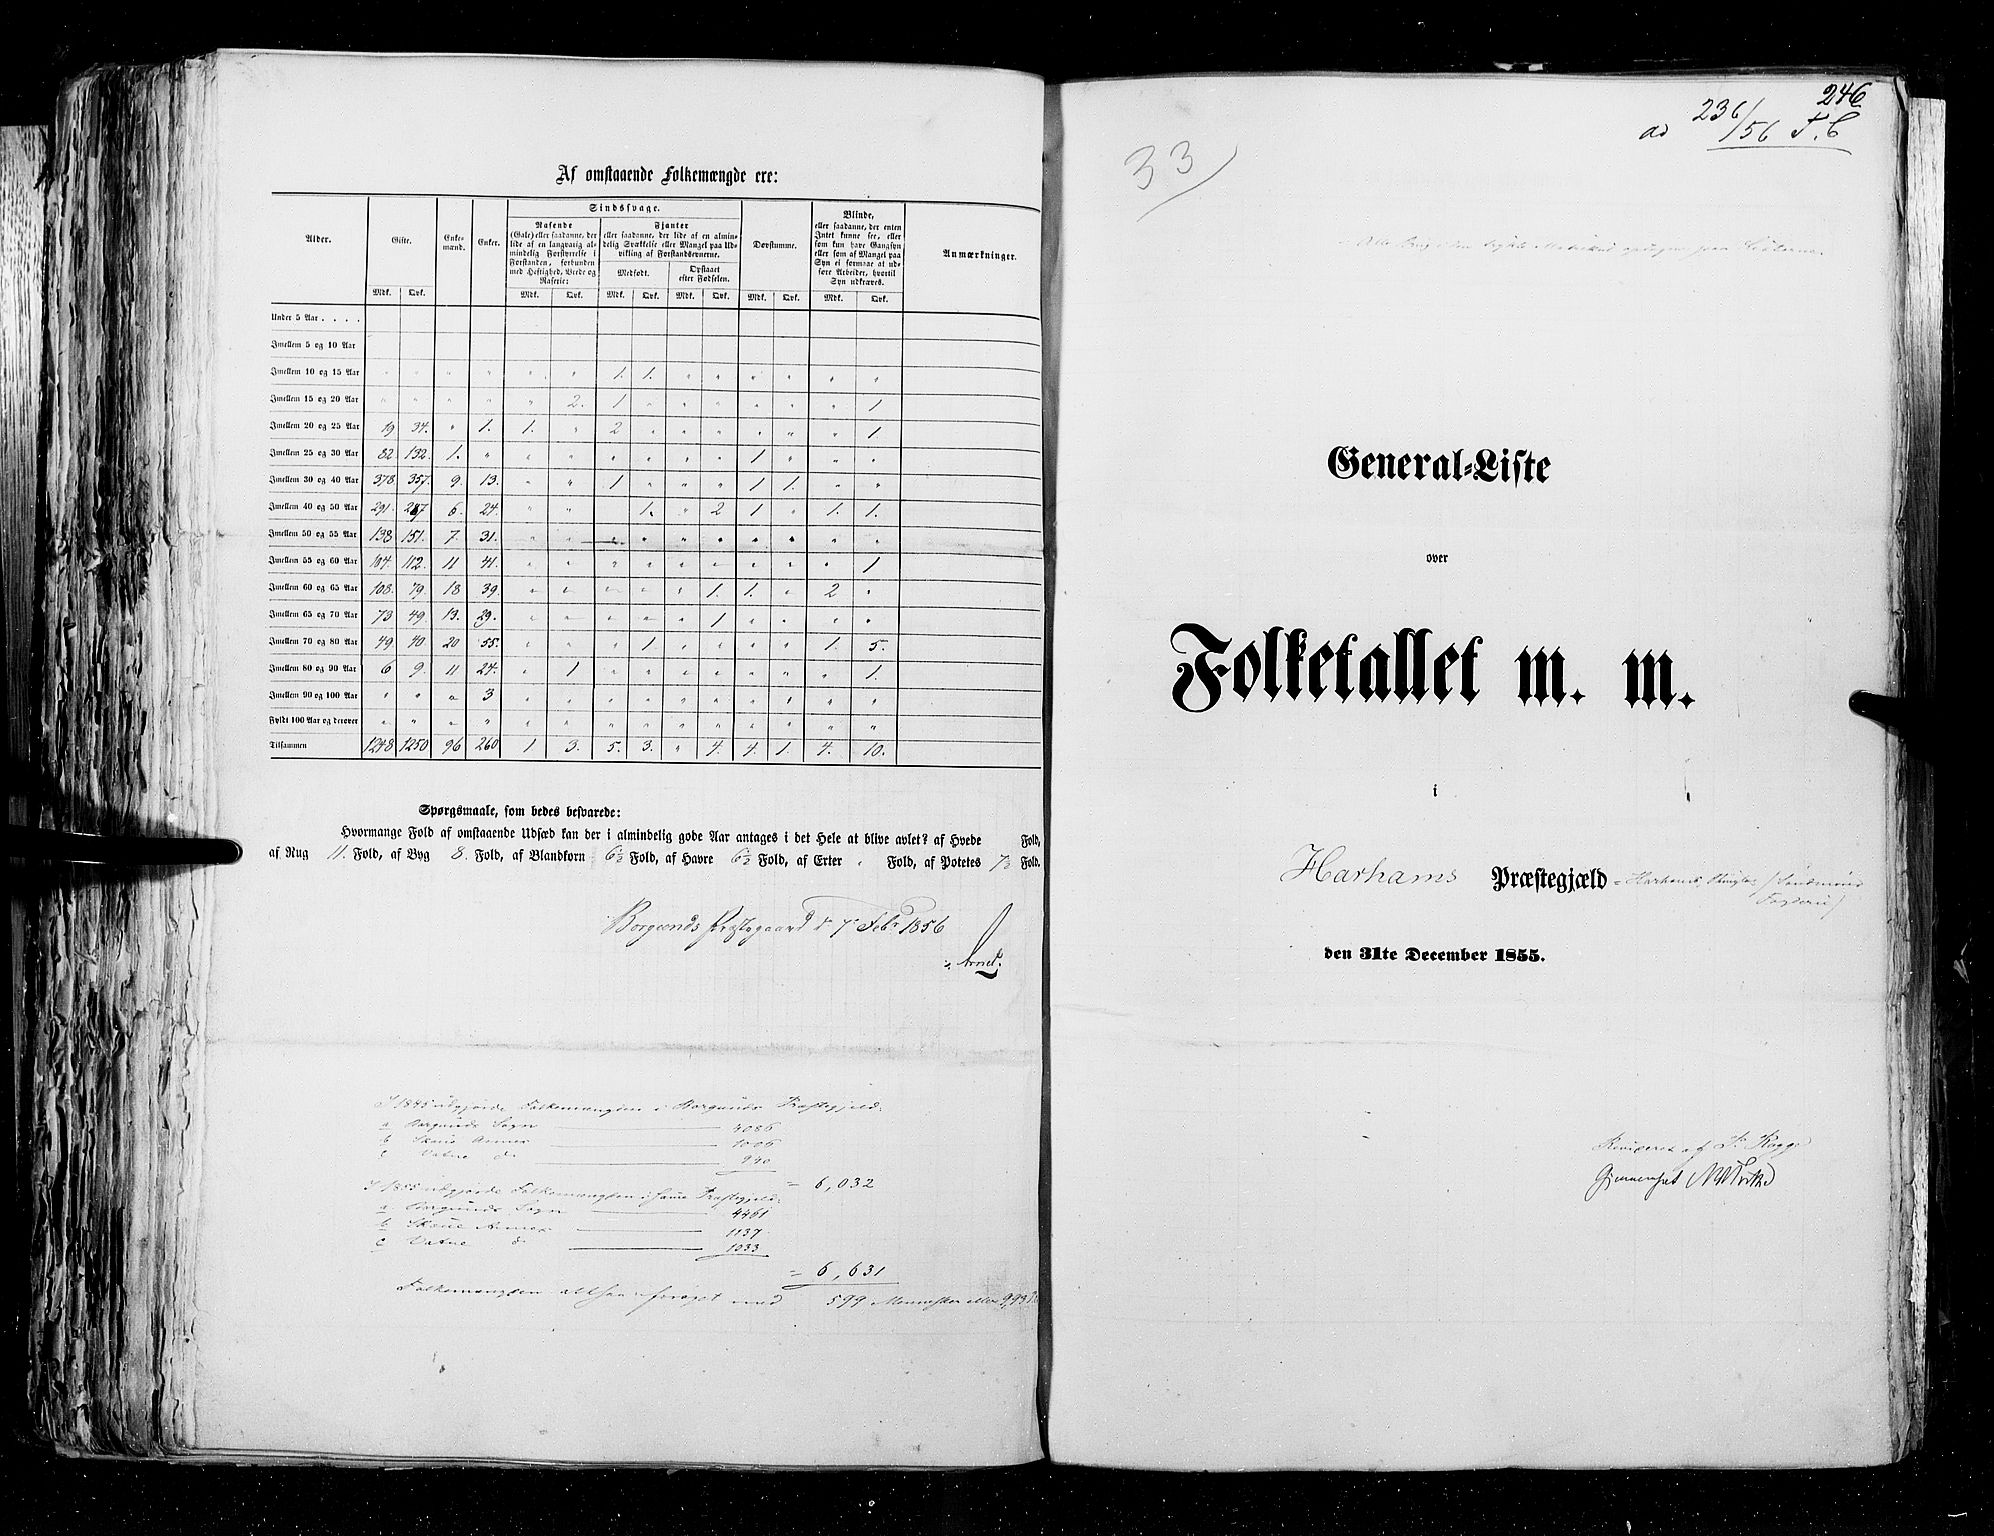 RA, Census 1855, vol. 5: Nordre Bergenhus amt, Romsdal amt og Søndre Trondhjem amt, 1855, p. 246